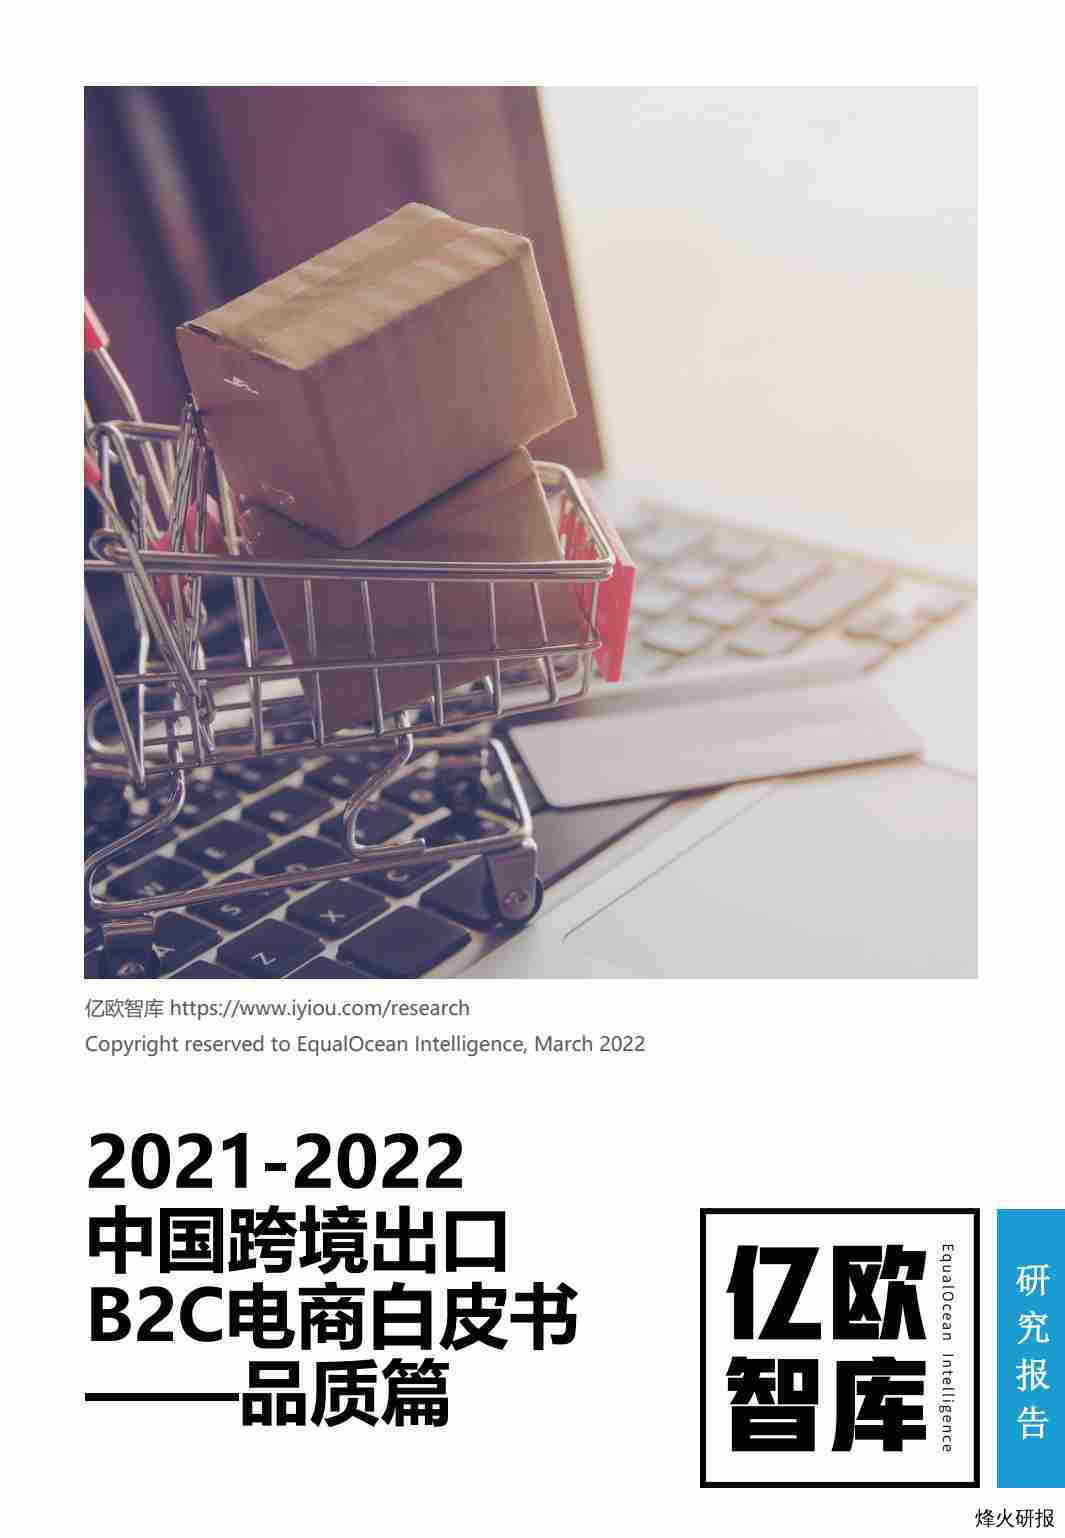 【亿欧智库】2021-2022中国跨境出口B2C电商白皮书——品质篇.pdf-第一页